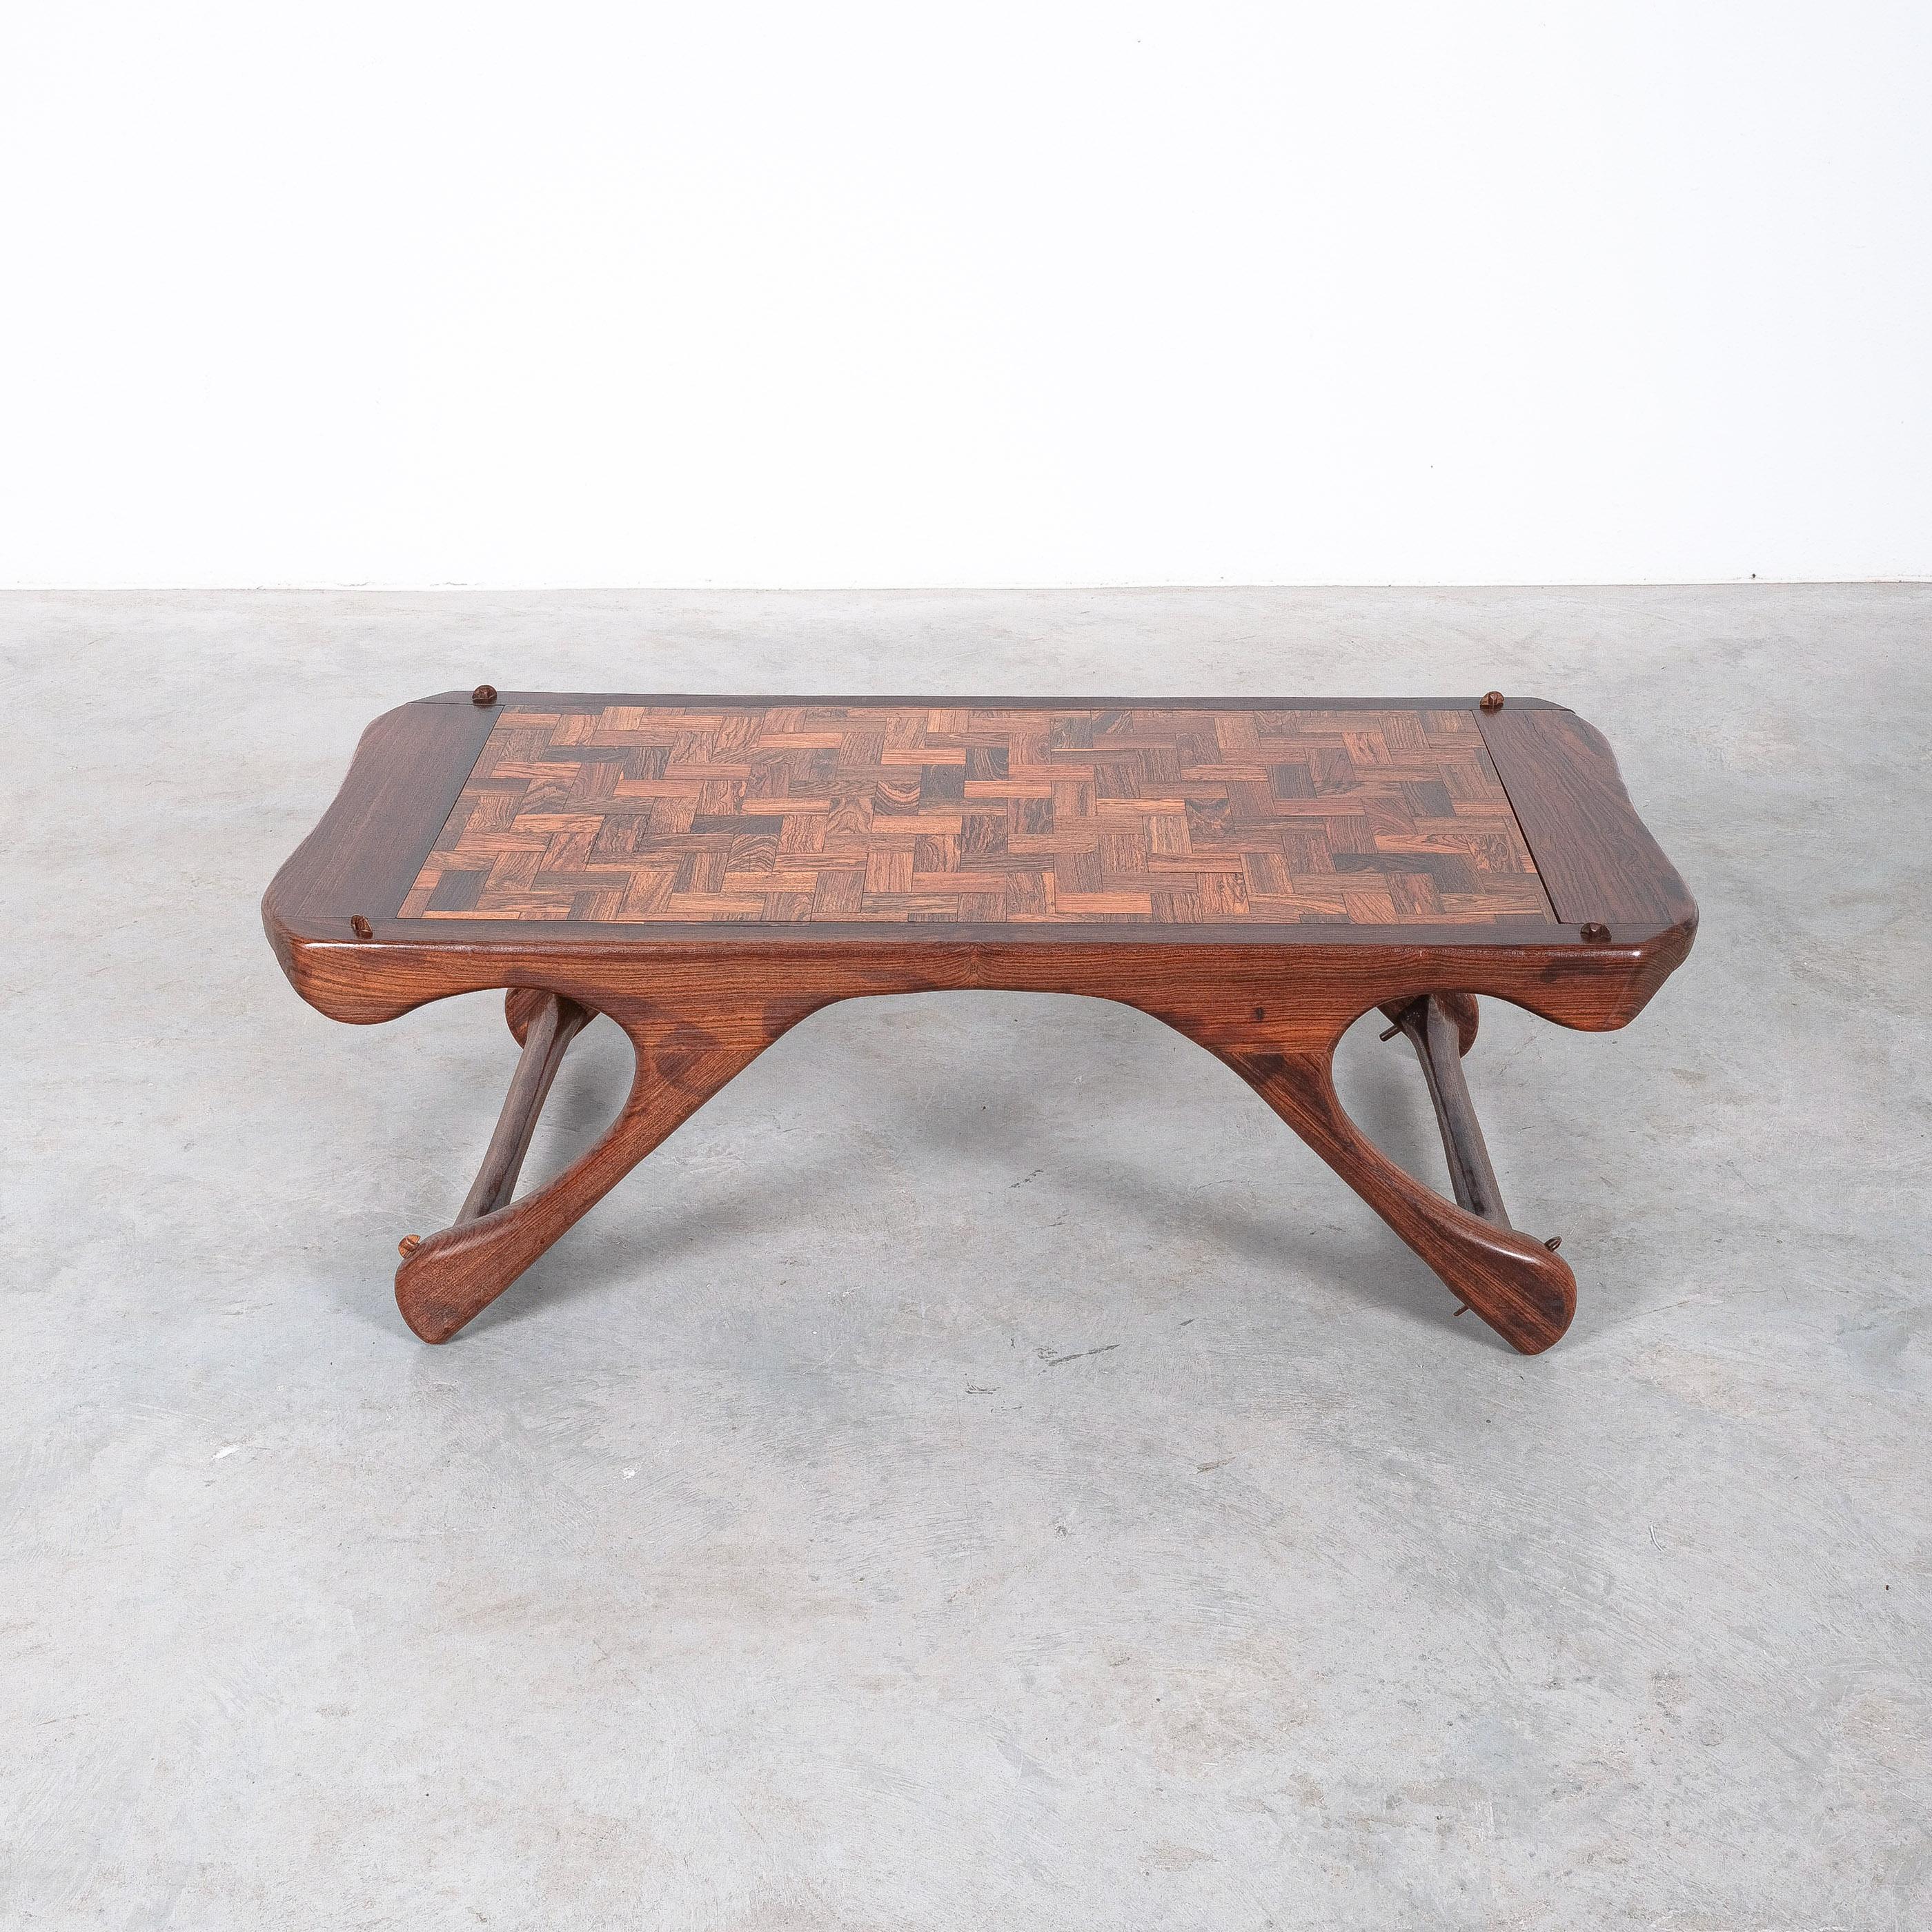 Rare table en parquet de palissandre en très bon état, Don Condit 1960

Nous disposons également d'un canapé rare de Don Shoemaker.

Un chef-d'œuvre sculptural de Don Shoemaker. Nous avons actuellement cette table dans notre Collectional,